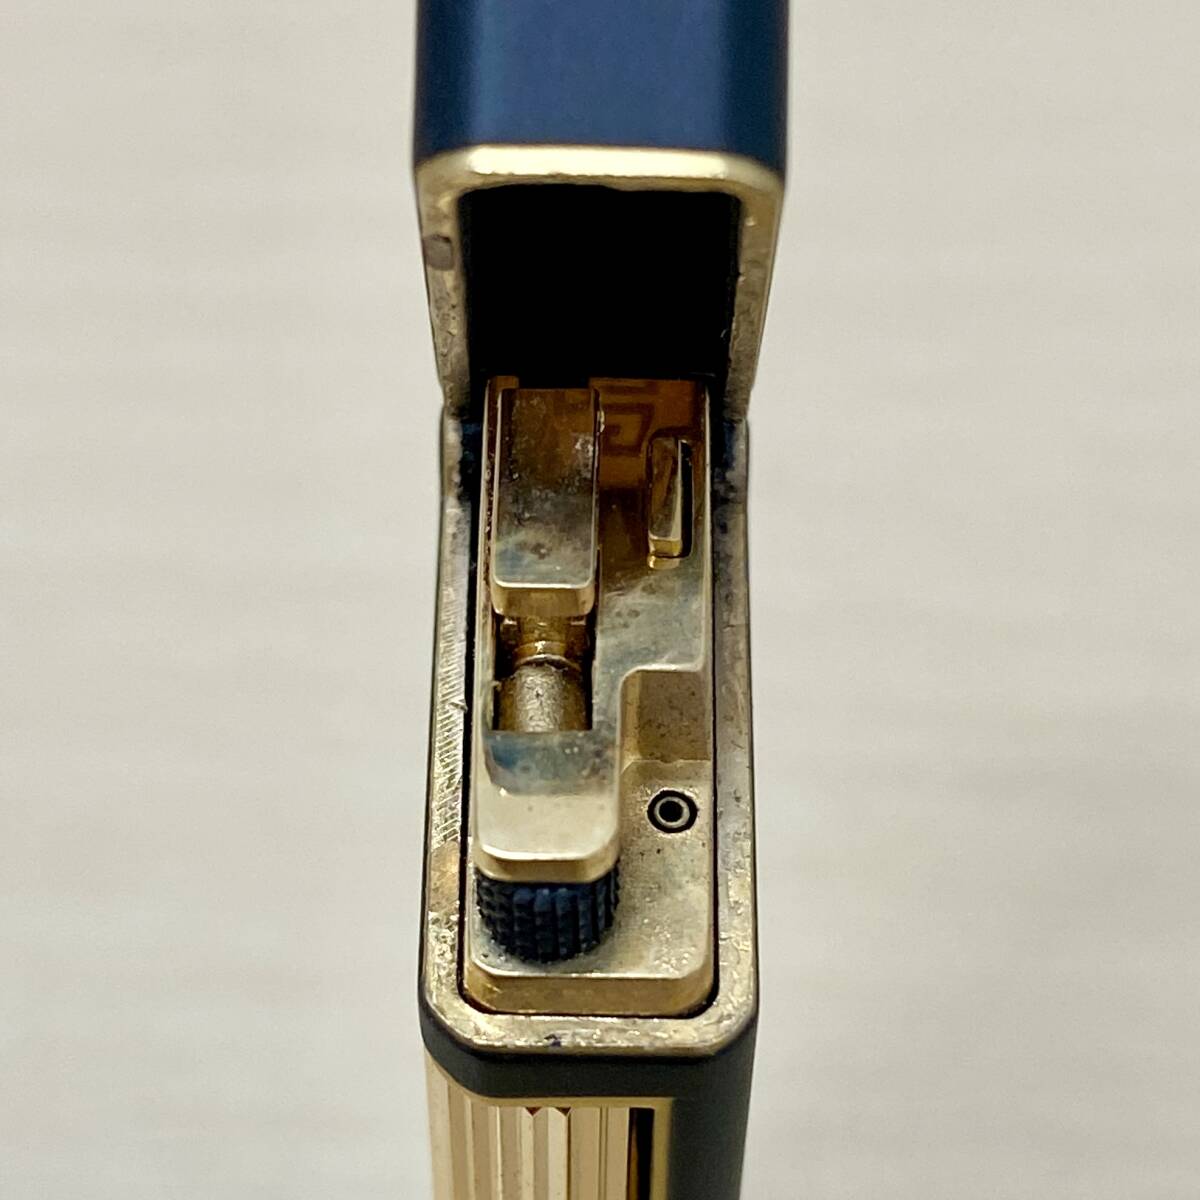 【ジャンク扱い】 GIVENCHY ガスライター ネイビーカラー ゴールドカラー ジバンシー 9000 着火未確認 保管品 中古品 コレクション_画像9